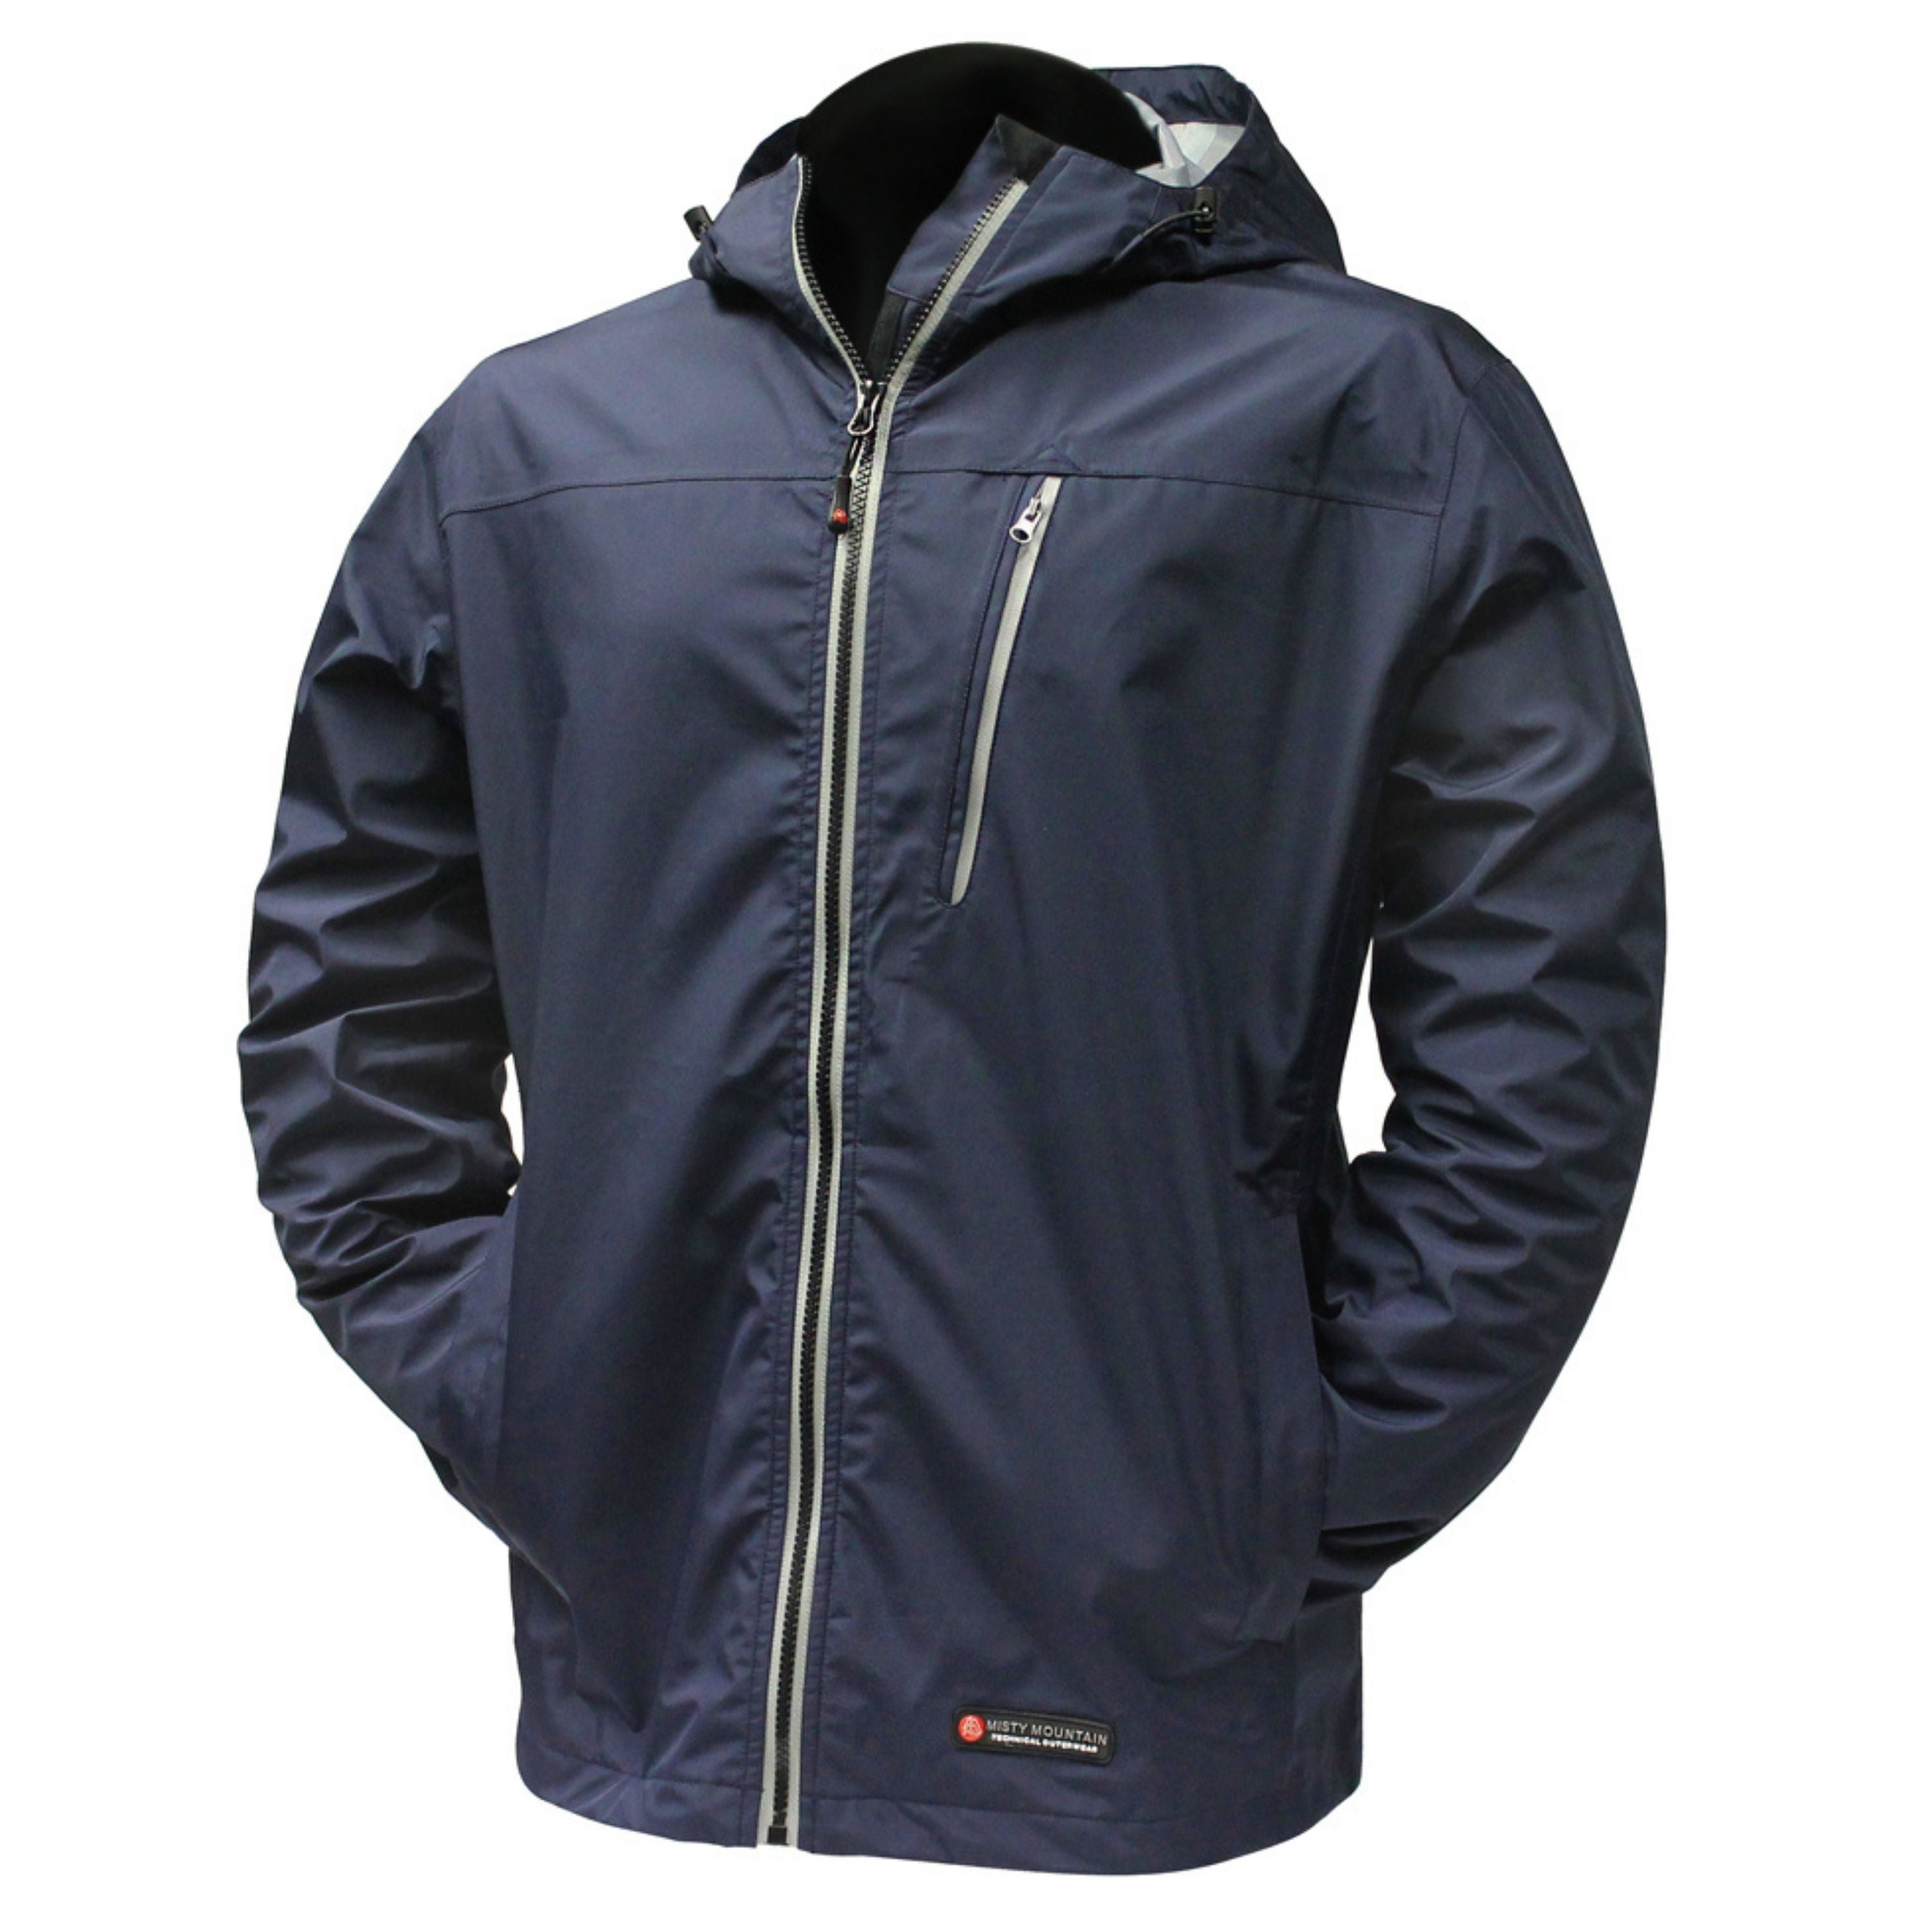 Manteau de randonnée "Aerodry" - Homme||"Aerodry" Rain jacket - Men's